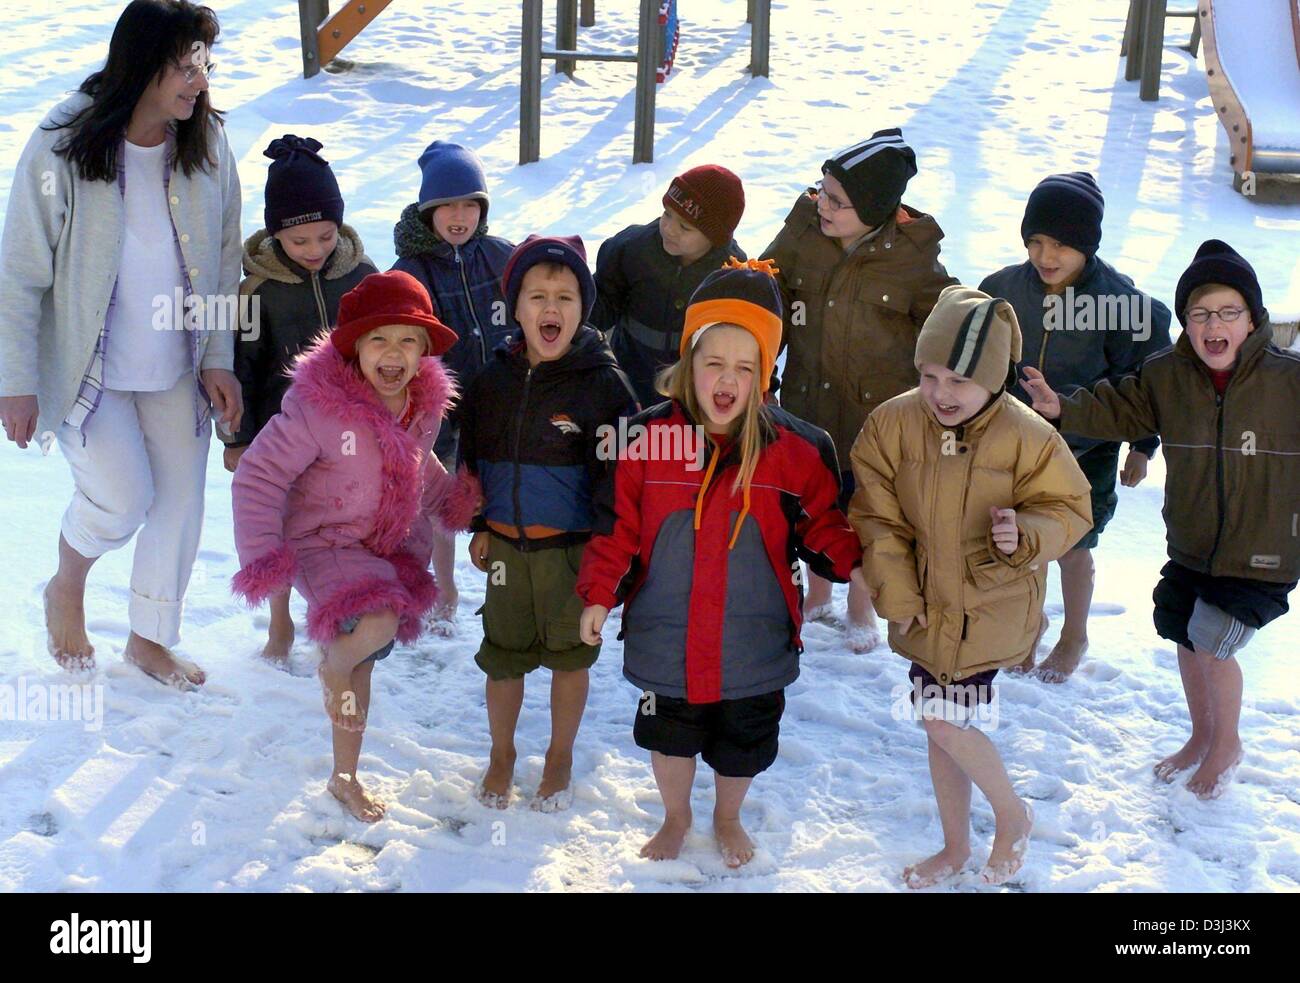 (Dpa) - scheinen der sechsjährigen gerne barfuß im Schnee, in einem Kneipp-Kindergarten in Eilenburg, Deutschland, 5. Januar 2004. Nach einer Minute des "Schneeschuhwandern" Aufwärmen der Kinder im Rahmen des Gesundheitsprogramms. Die Grundlage der Kneipp-Therapie ist in der Regel in kaltem Wasser, Fuß ist ein ideales Training für die Blutgefäße und Nerven der Haut. Die Kneipp misst die wir Stockfoto